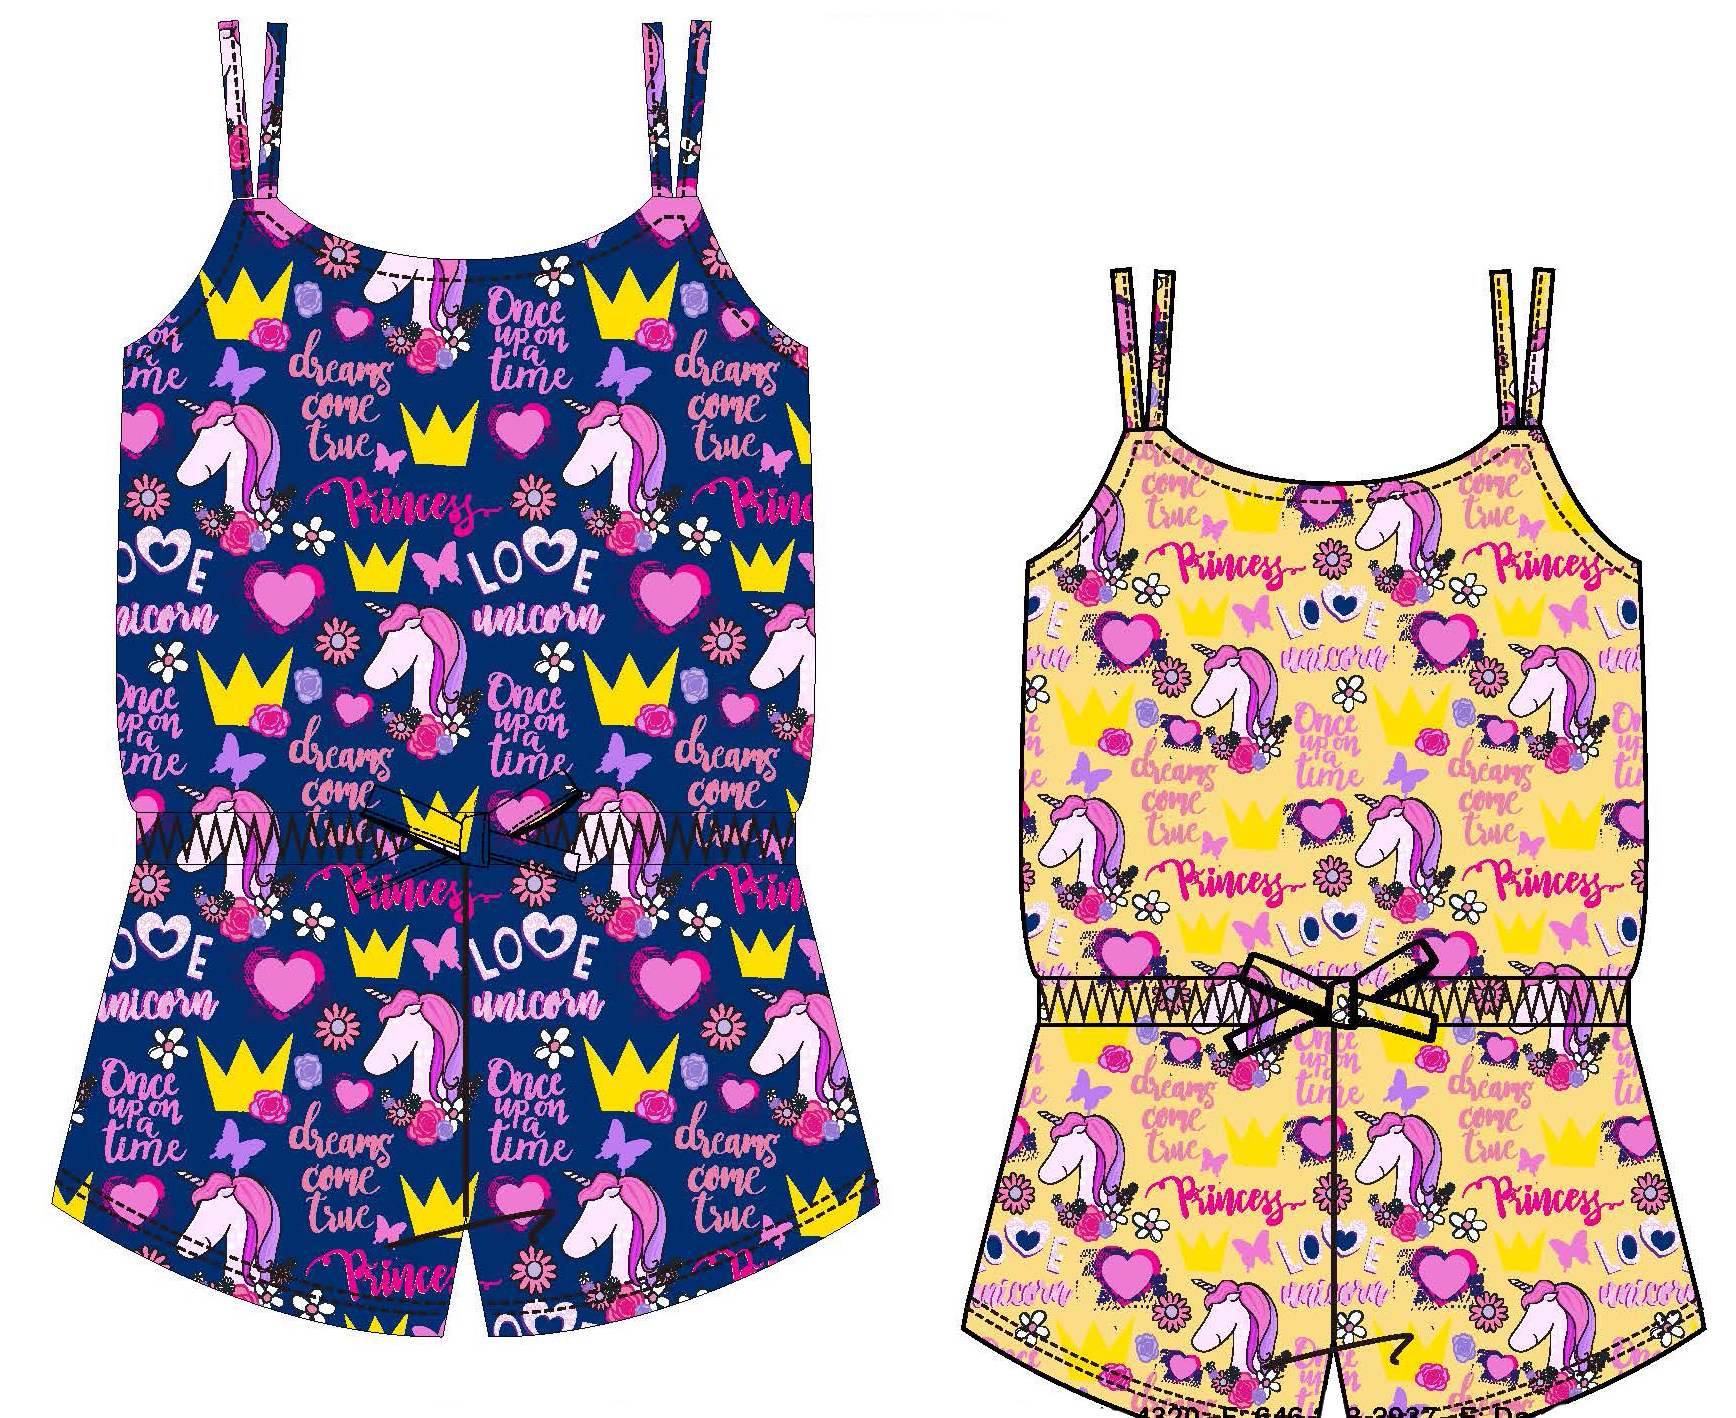 Baby Girl's Printed Knit Romper DRESS w/ Royal Princess & Unicorn Print - Size 12M-24M